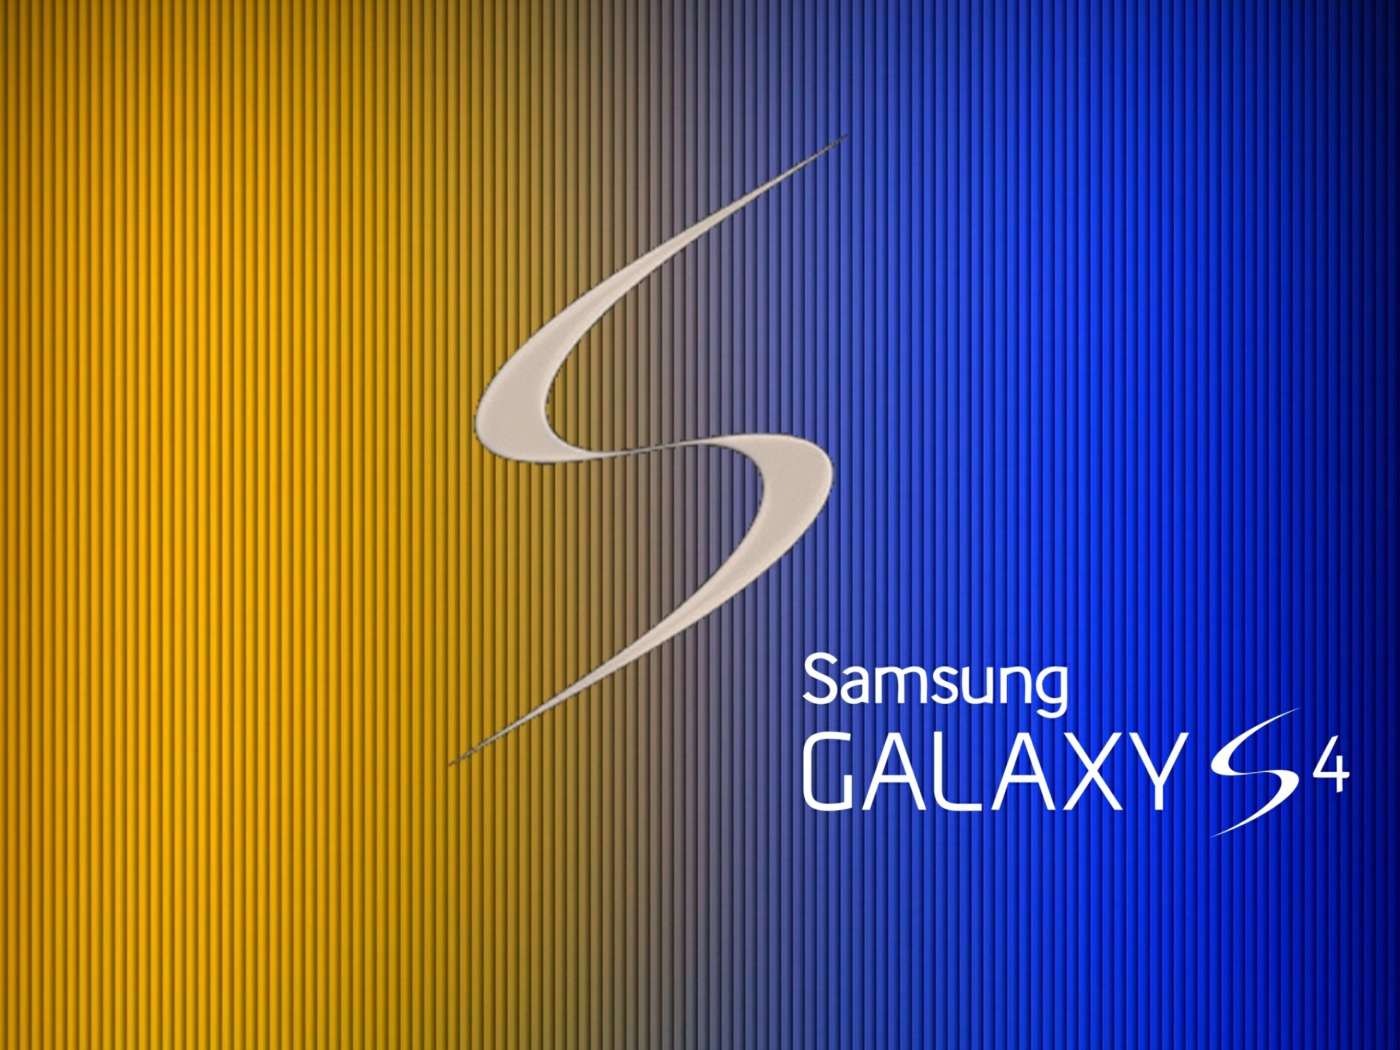 S Galaxy S4 wallpaper 1400x1050